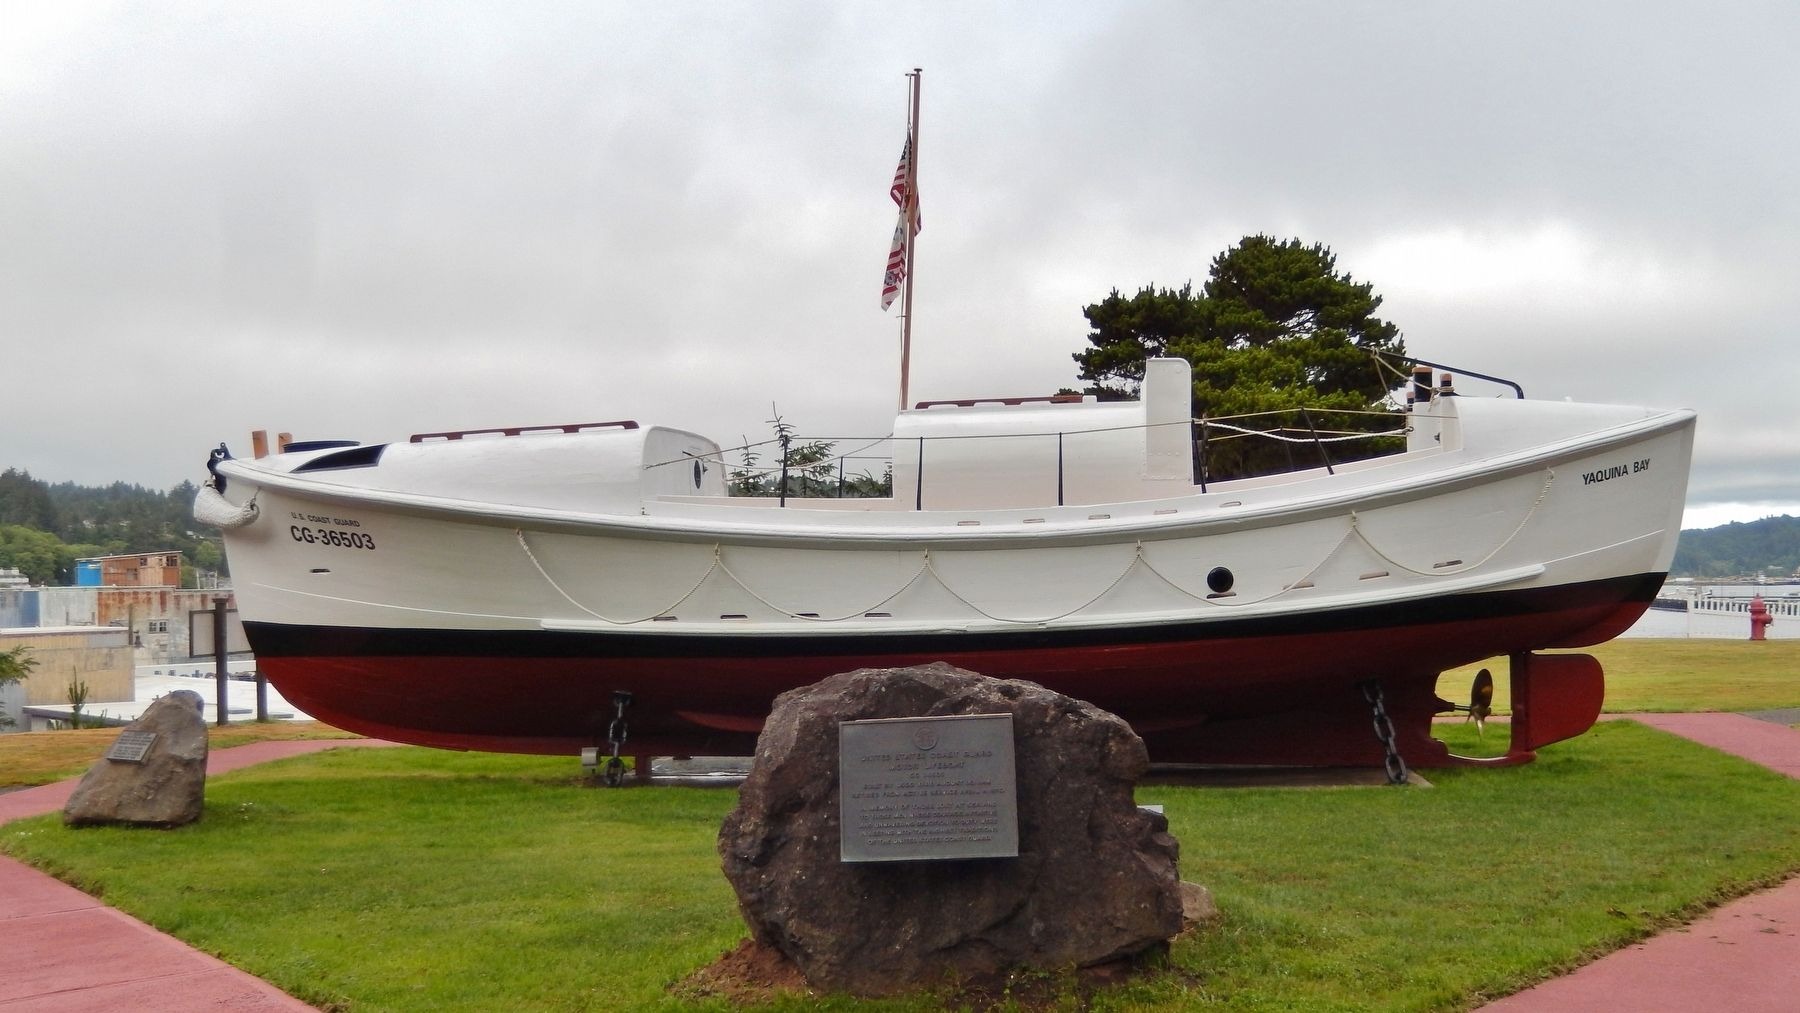 The lifesaving marker and 36-foot motor lifeboat on display at Coast Guard Station Yaquina Bay, Newport, Oregon (Historical Marker Database)